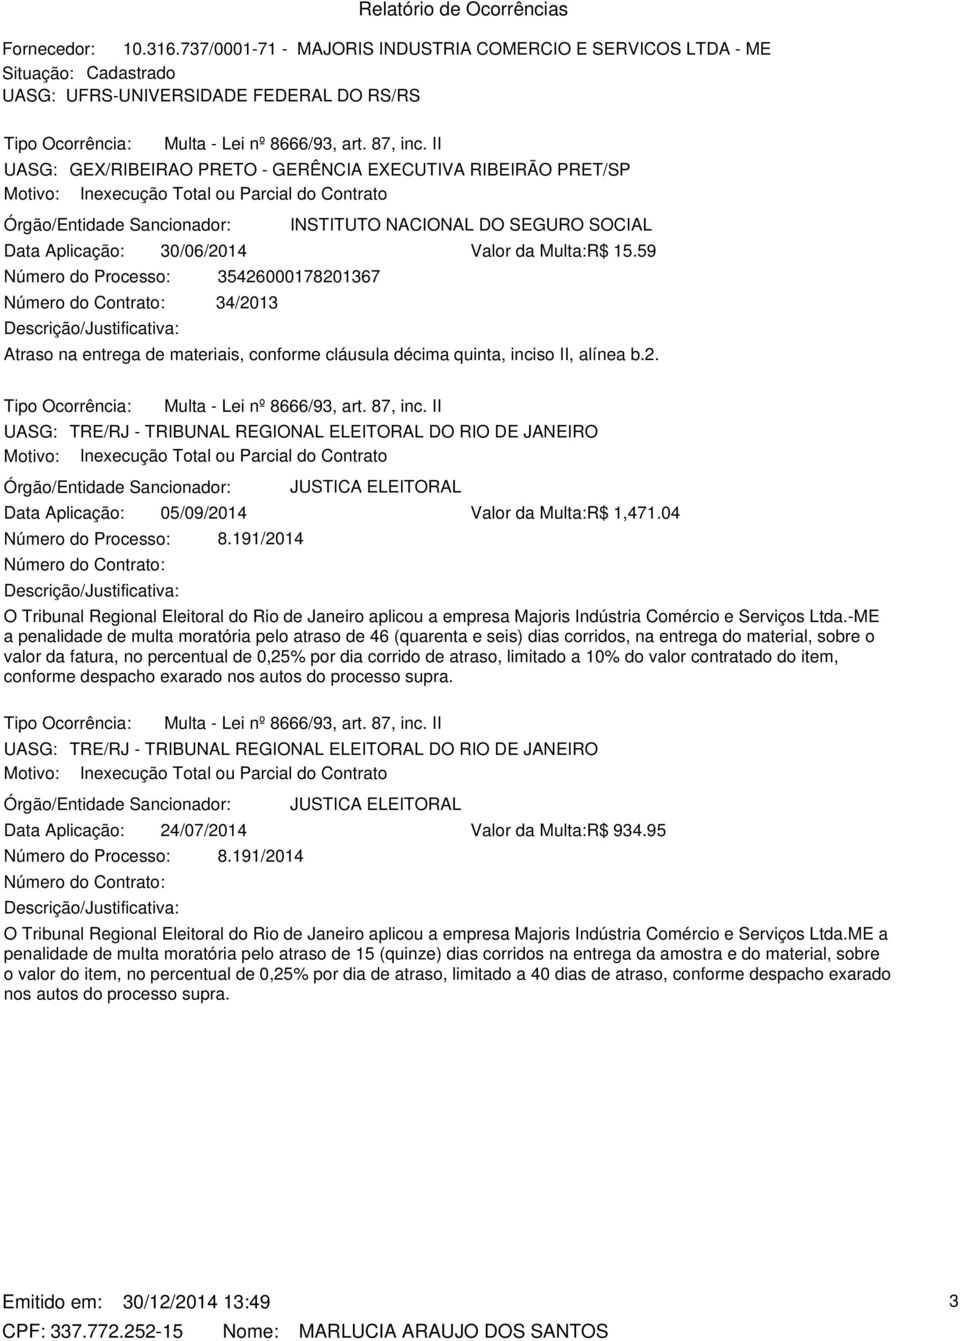 II UASG: GEX/RIBEIRAO PRETO - GERÊNCIA EXECUTIVA RIBEIRÃO PRET/SP Motivo: Inexecução Total ou Parcial do Contrato INSTITUTO NACIONAL DO SEGURO SOCIAL Data Aplicação: 30/06/2014 Valor da Multa:R$ 15.